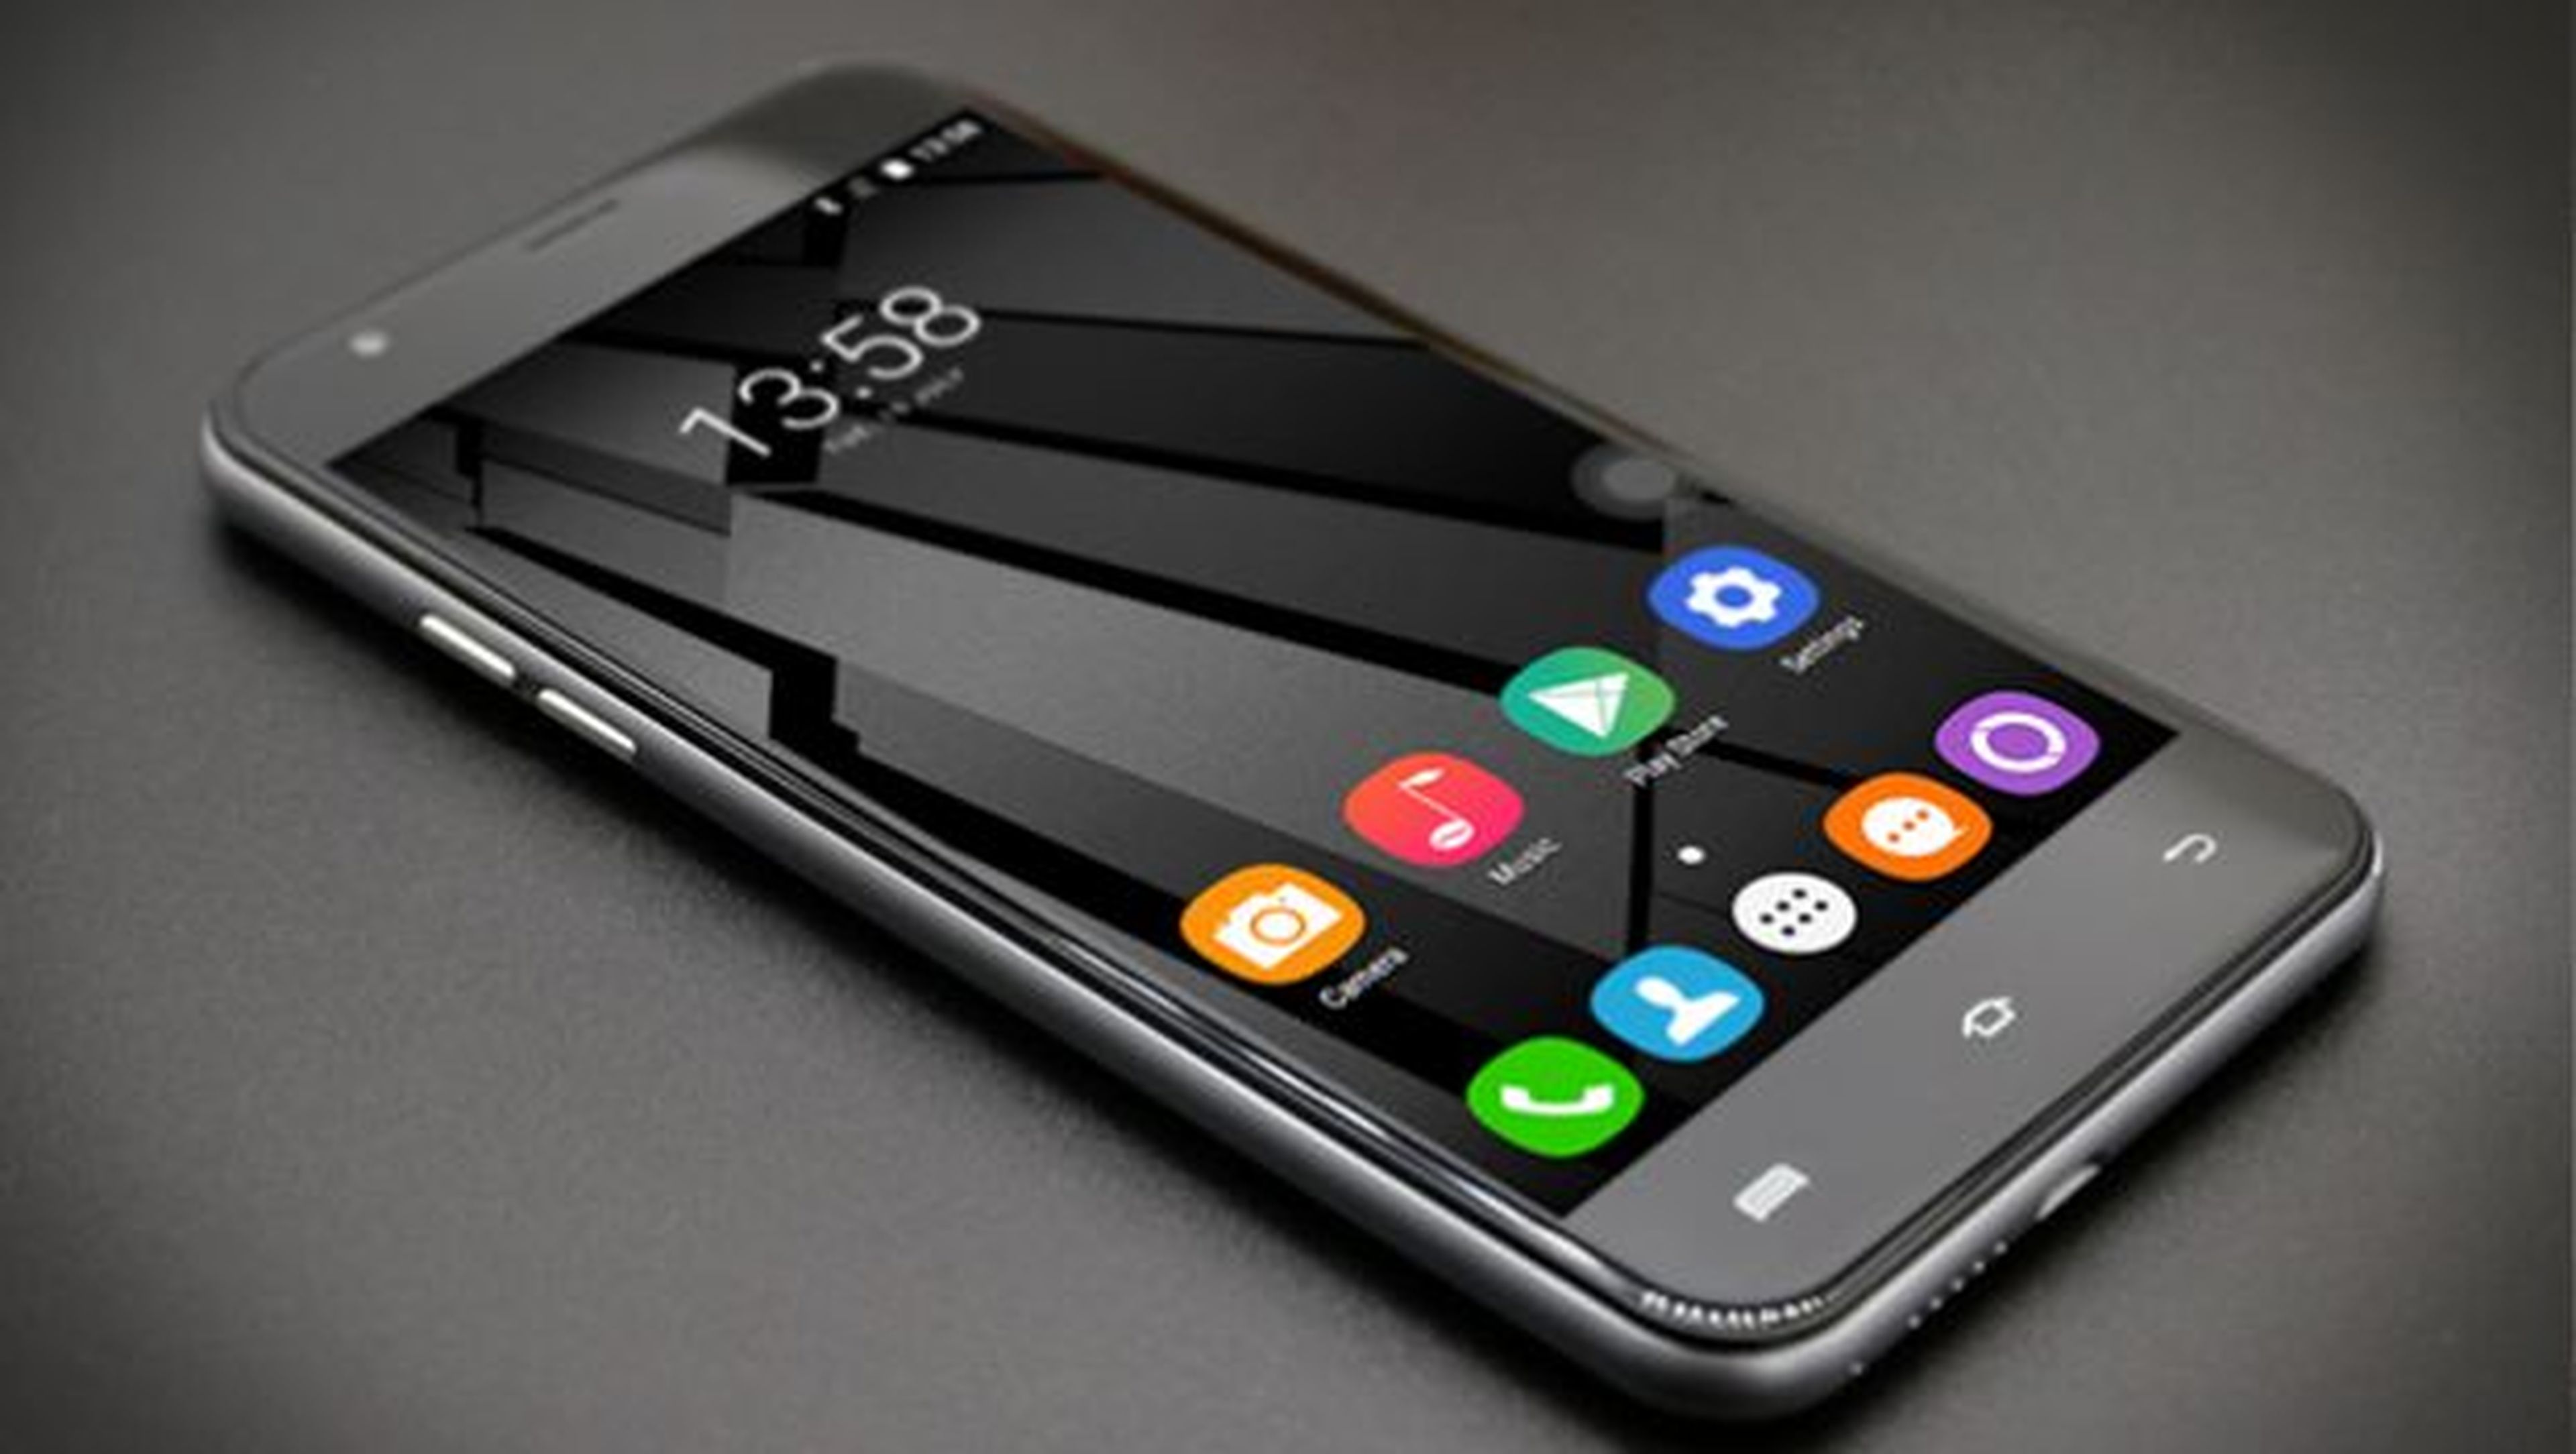 La última propuesta de Oukitel para su gama de smartphones Android de 5,5 pulgadas es el Oukitel U7 Plus